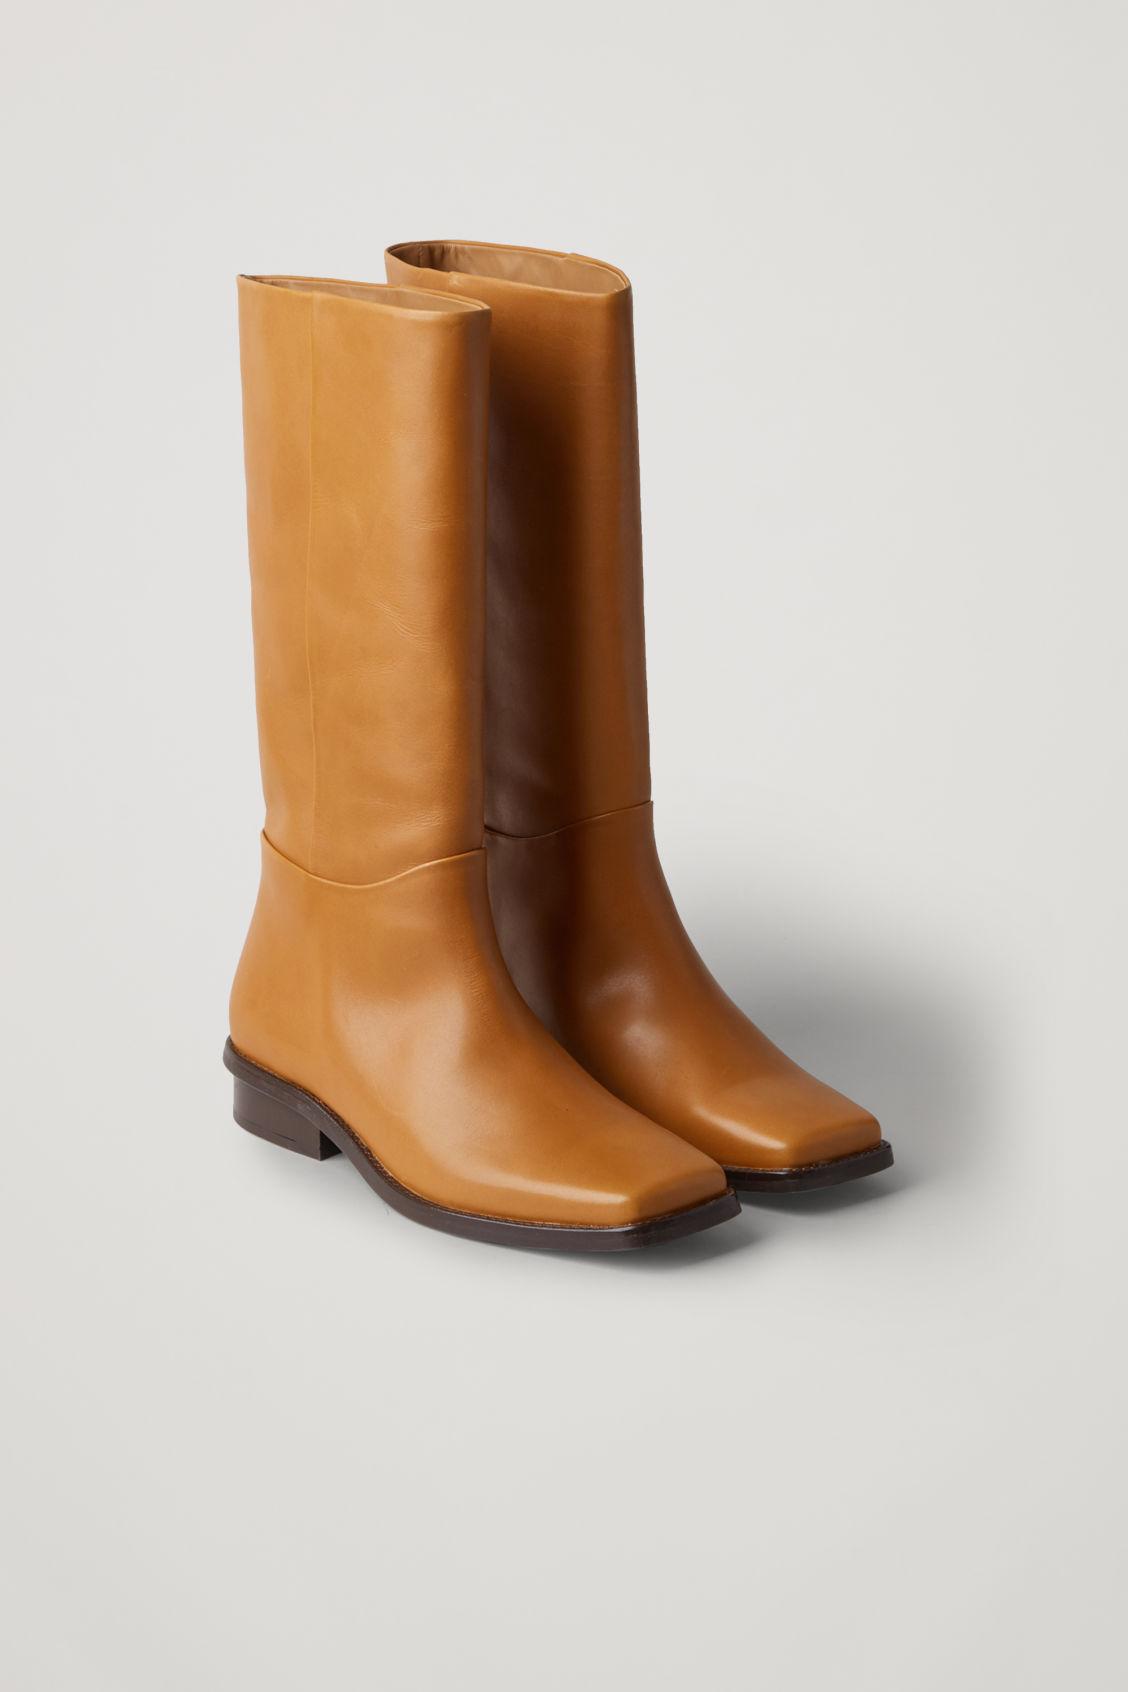 Ti Analytisk Ødelæggelse COS Square Toe Leather Boots in Orange - Lyst